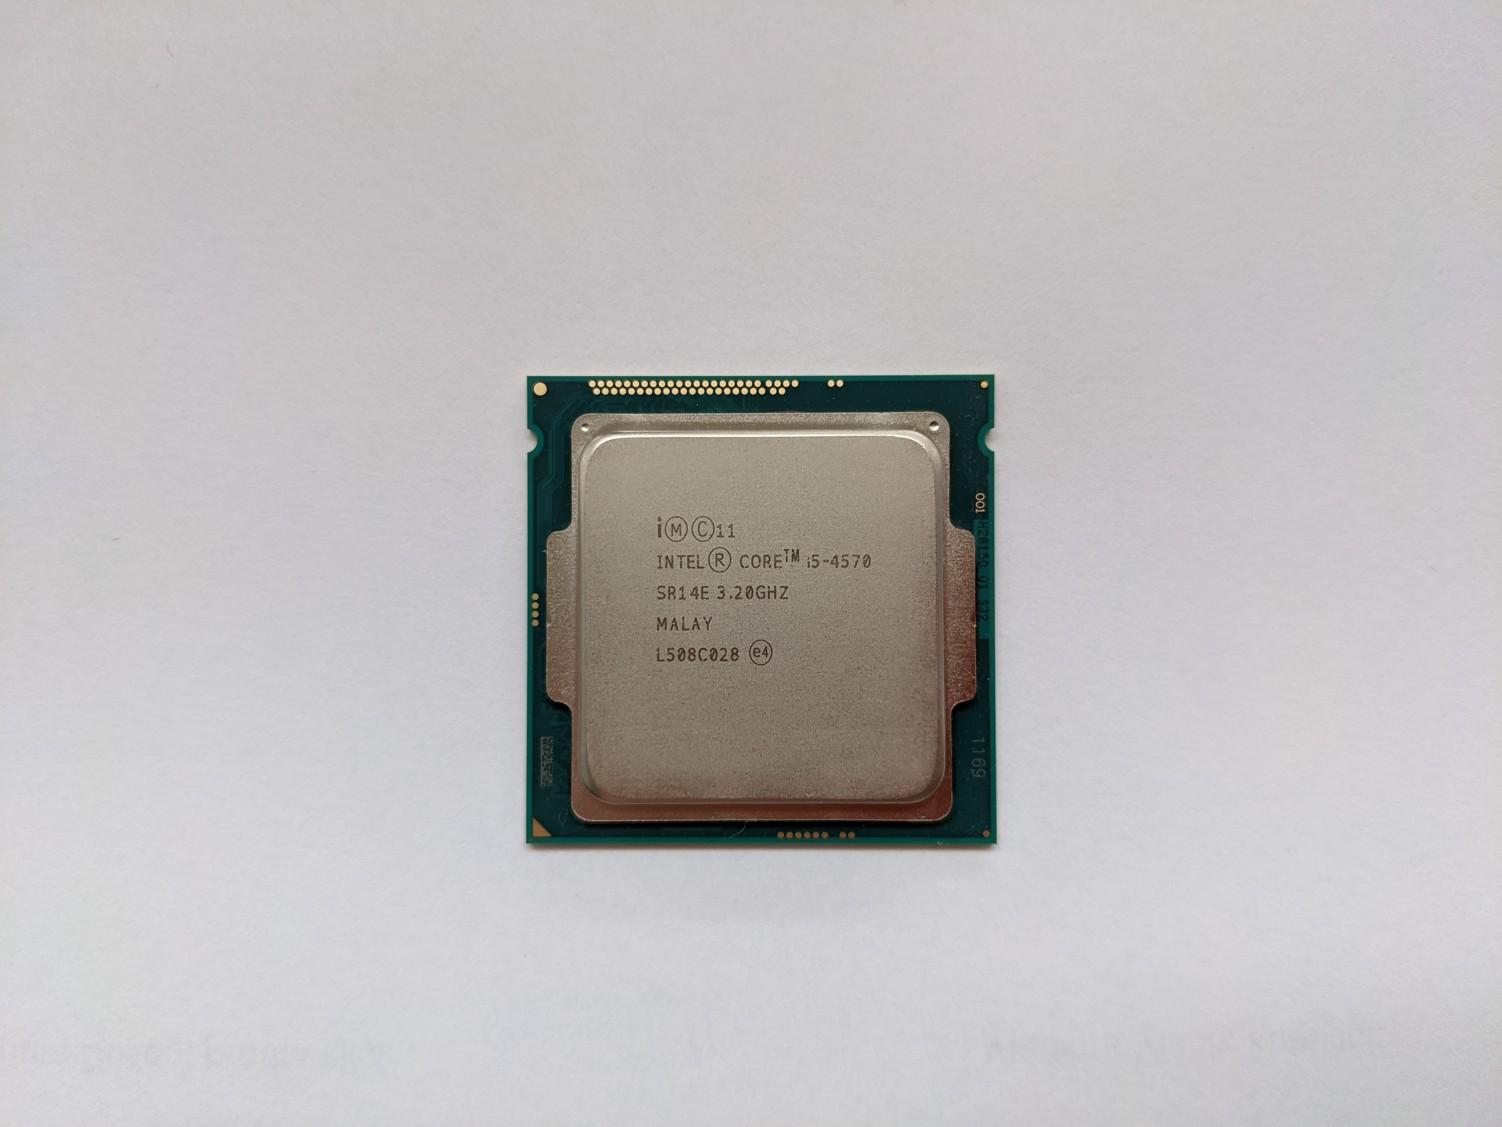 Intel® Core™ i5-4570 6 MB cache, 3.20 GHz až 3.6 GHz, SR14E, LGA1150 - Počítače a hry